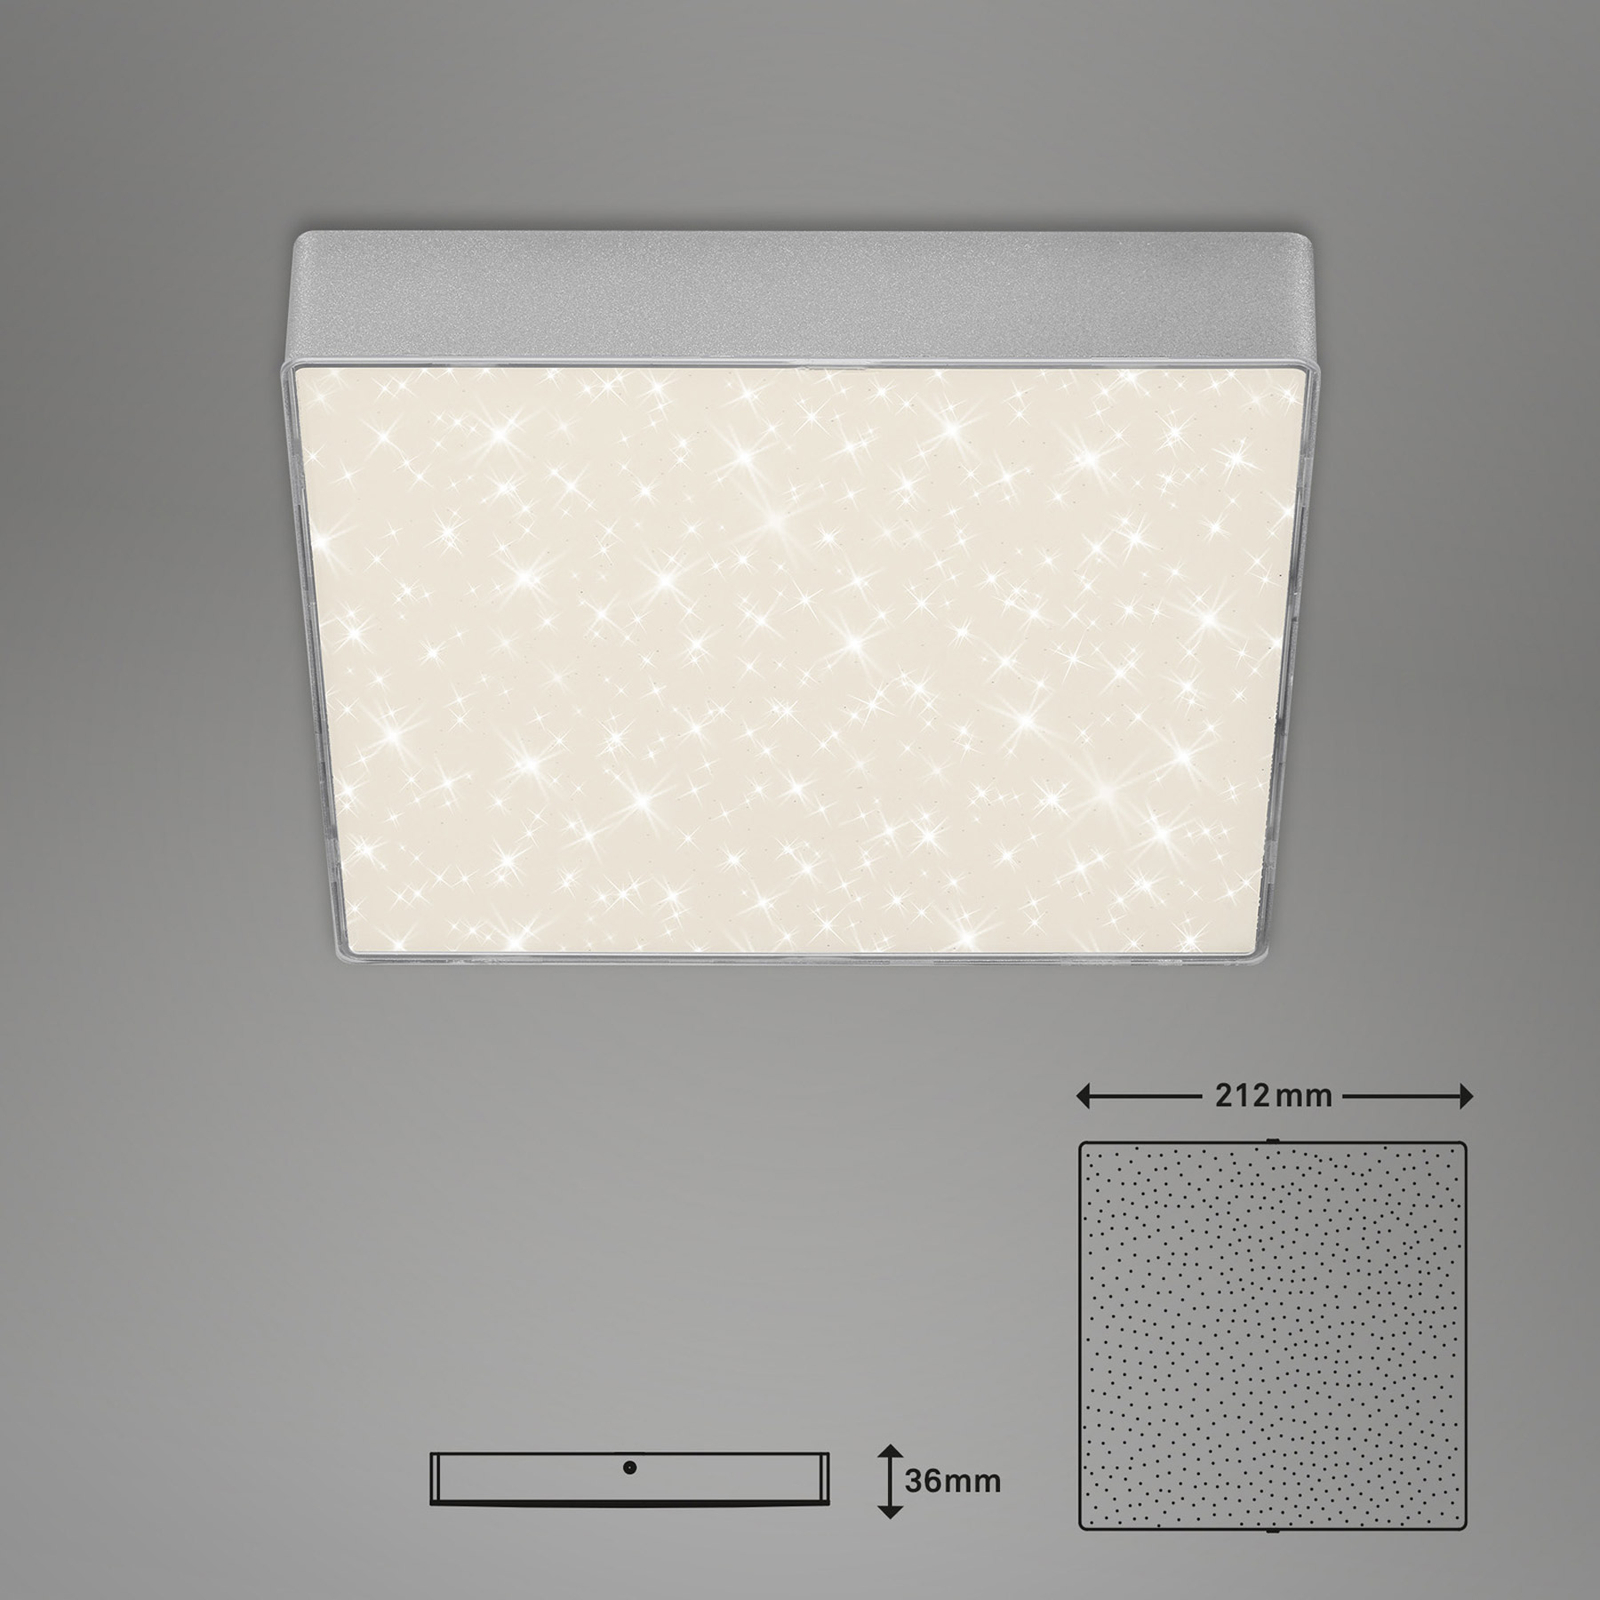 Φωτιστικό οροφής LED Flame Star, 21,2 x 21,2 cm ασημί